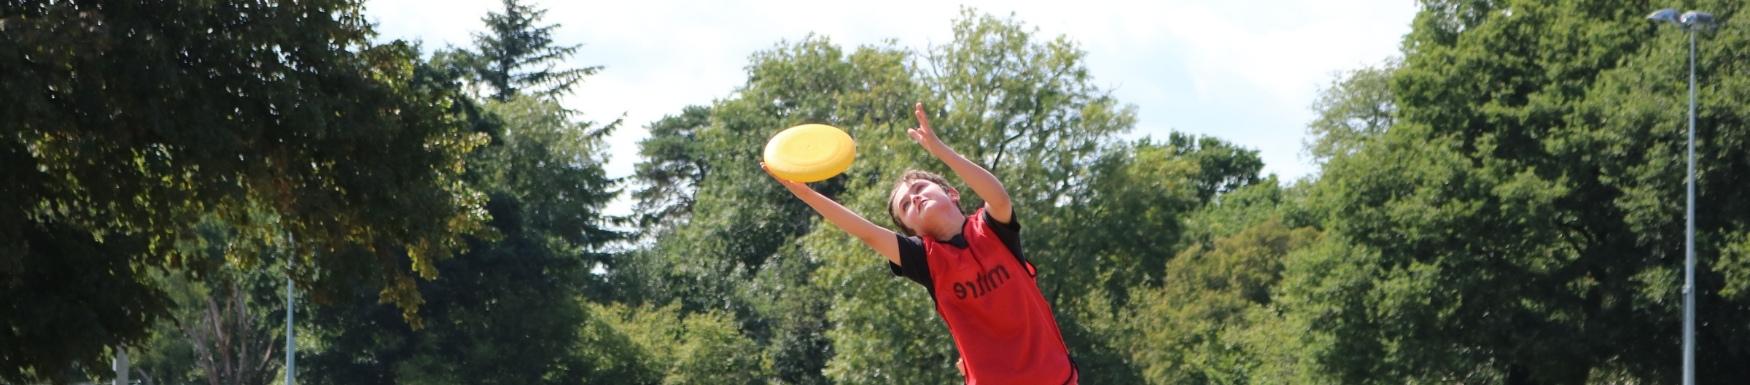 boy playing frisbee